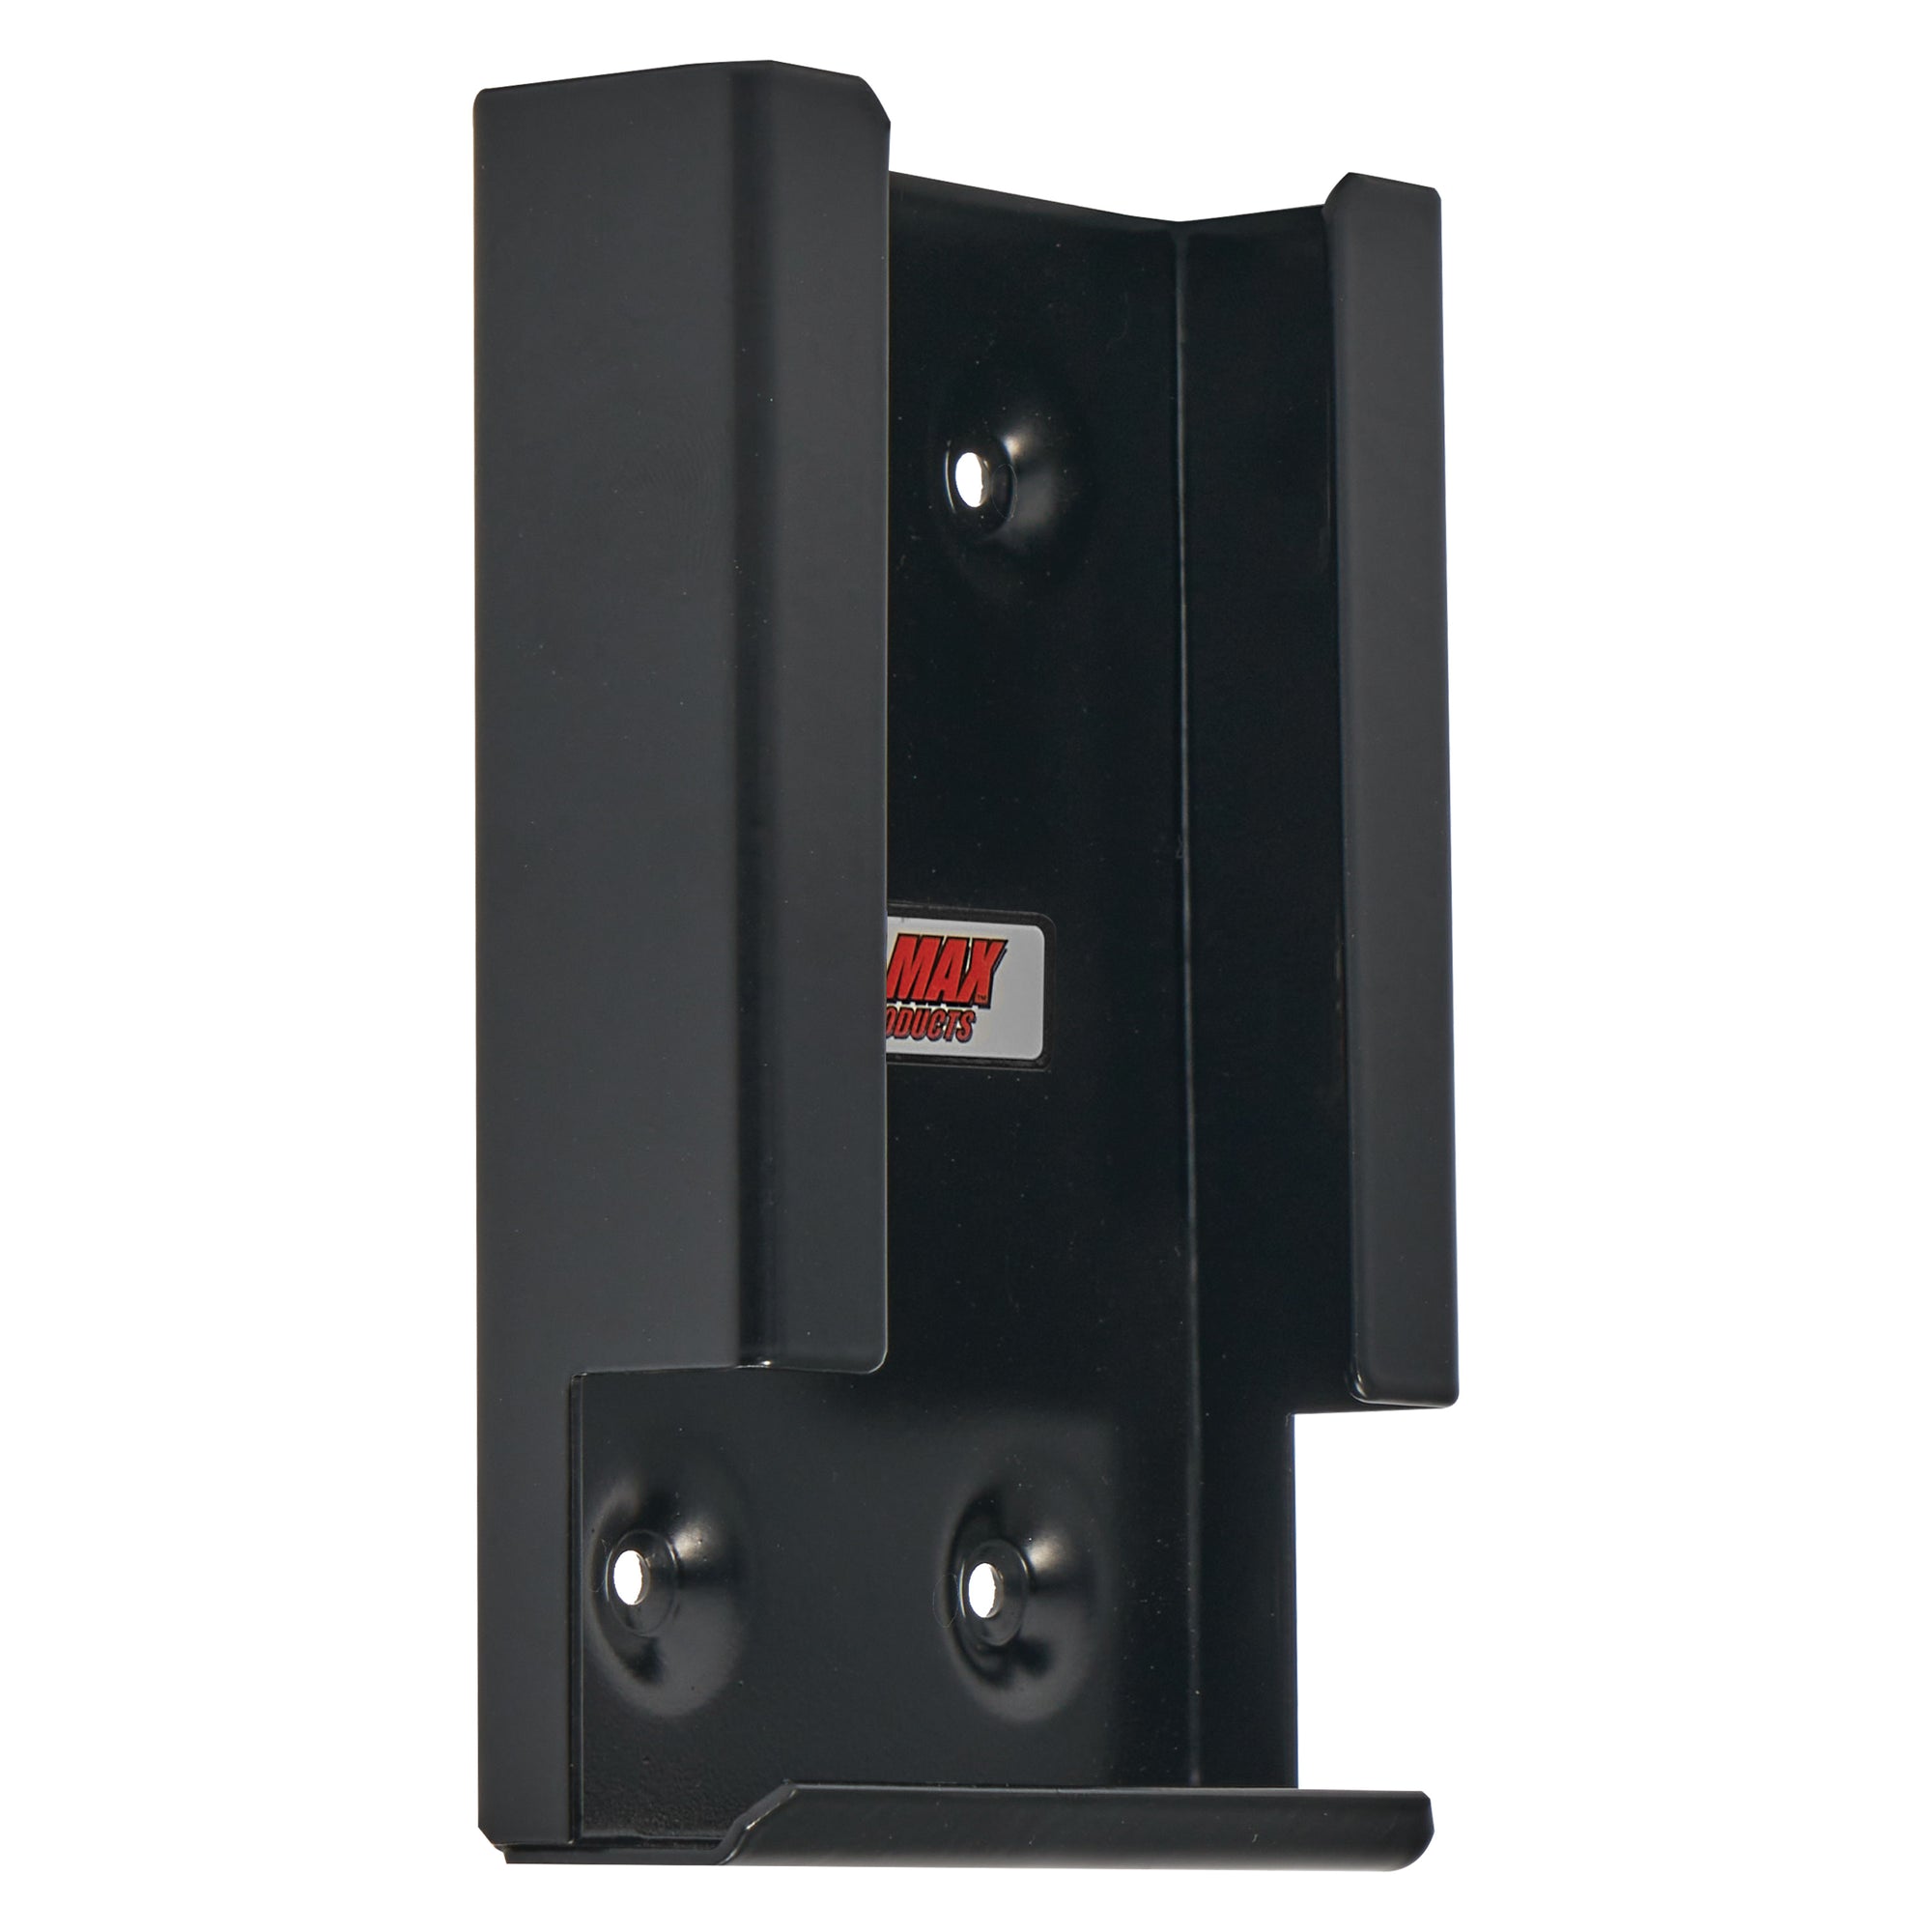 Extreme Max 5001.6148 Wall-Mount Aluminum Spark Plug Dispenser/Holder for Enclosed Race Trailer, Shop, Garage, Storage - Black